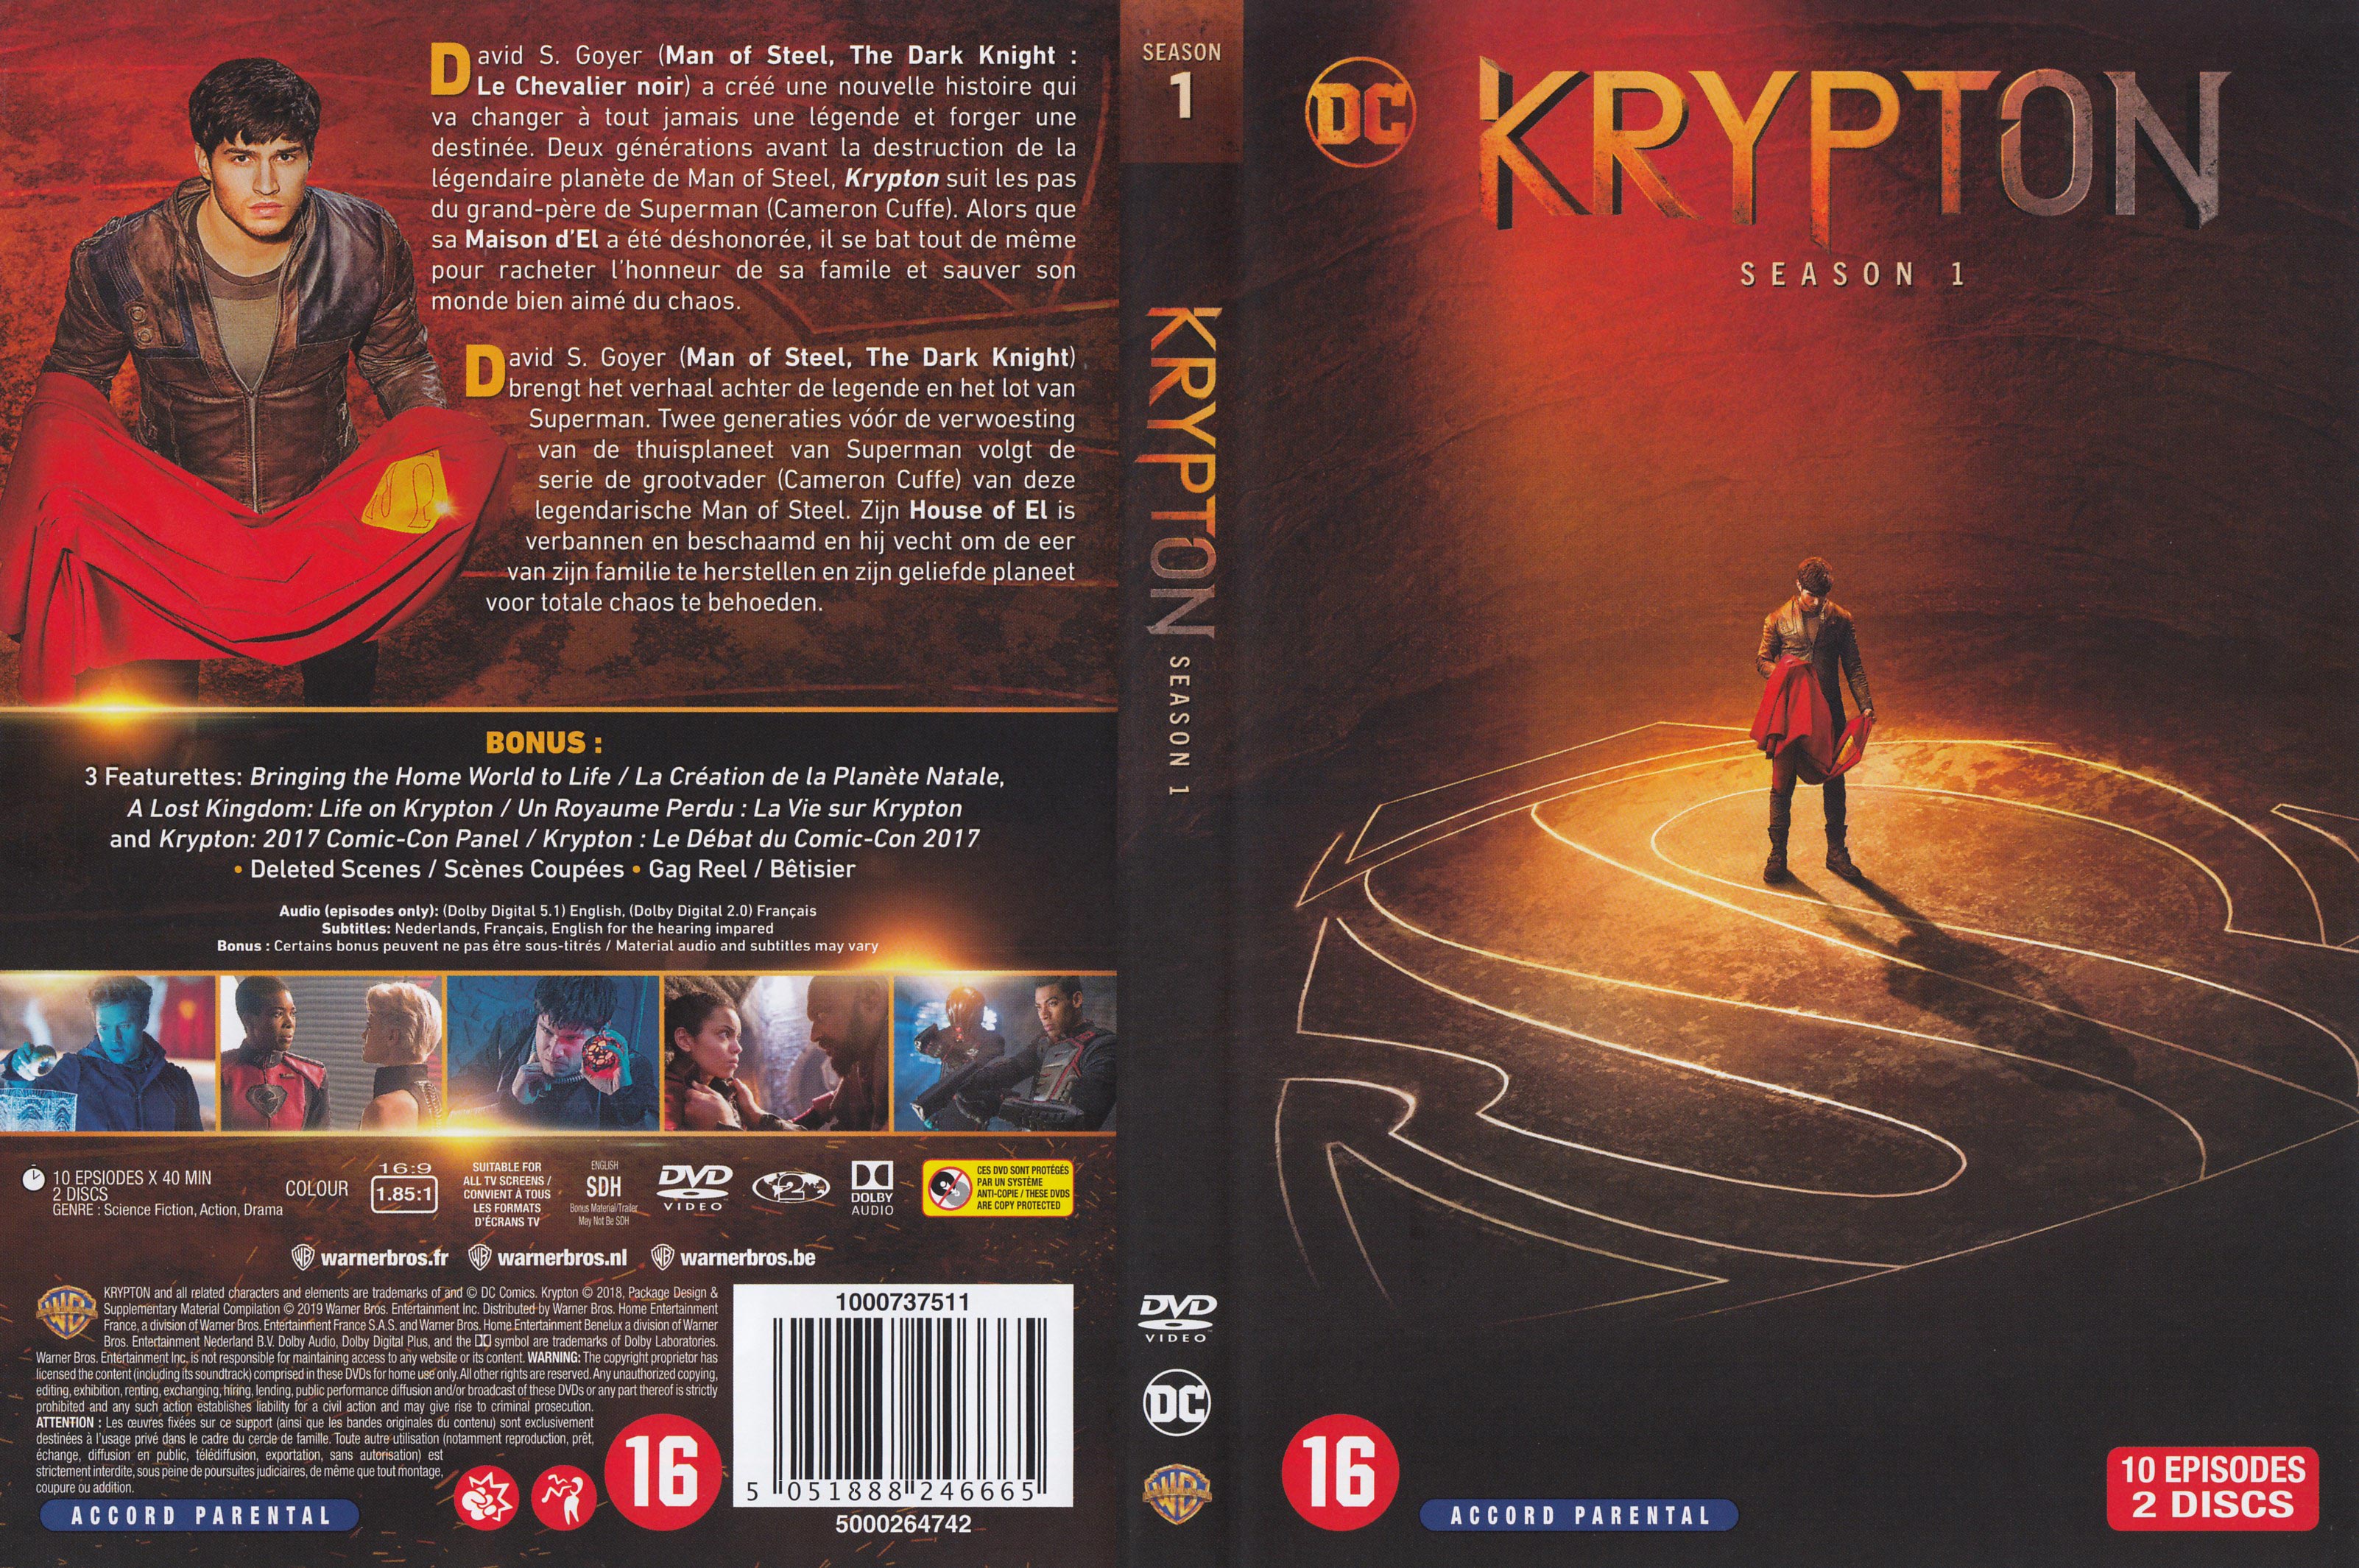 Jaquette DVD Krypton Saison 1